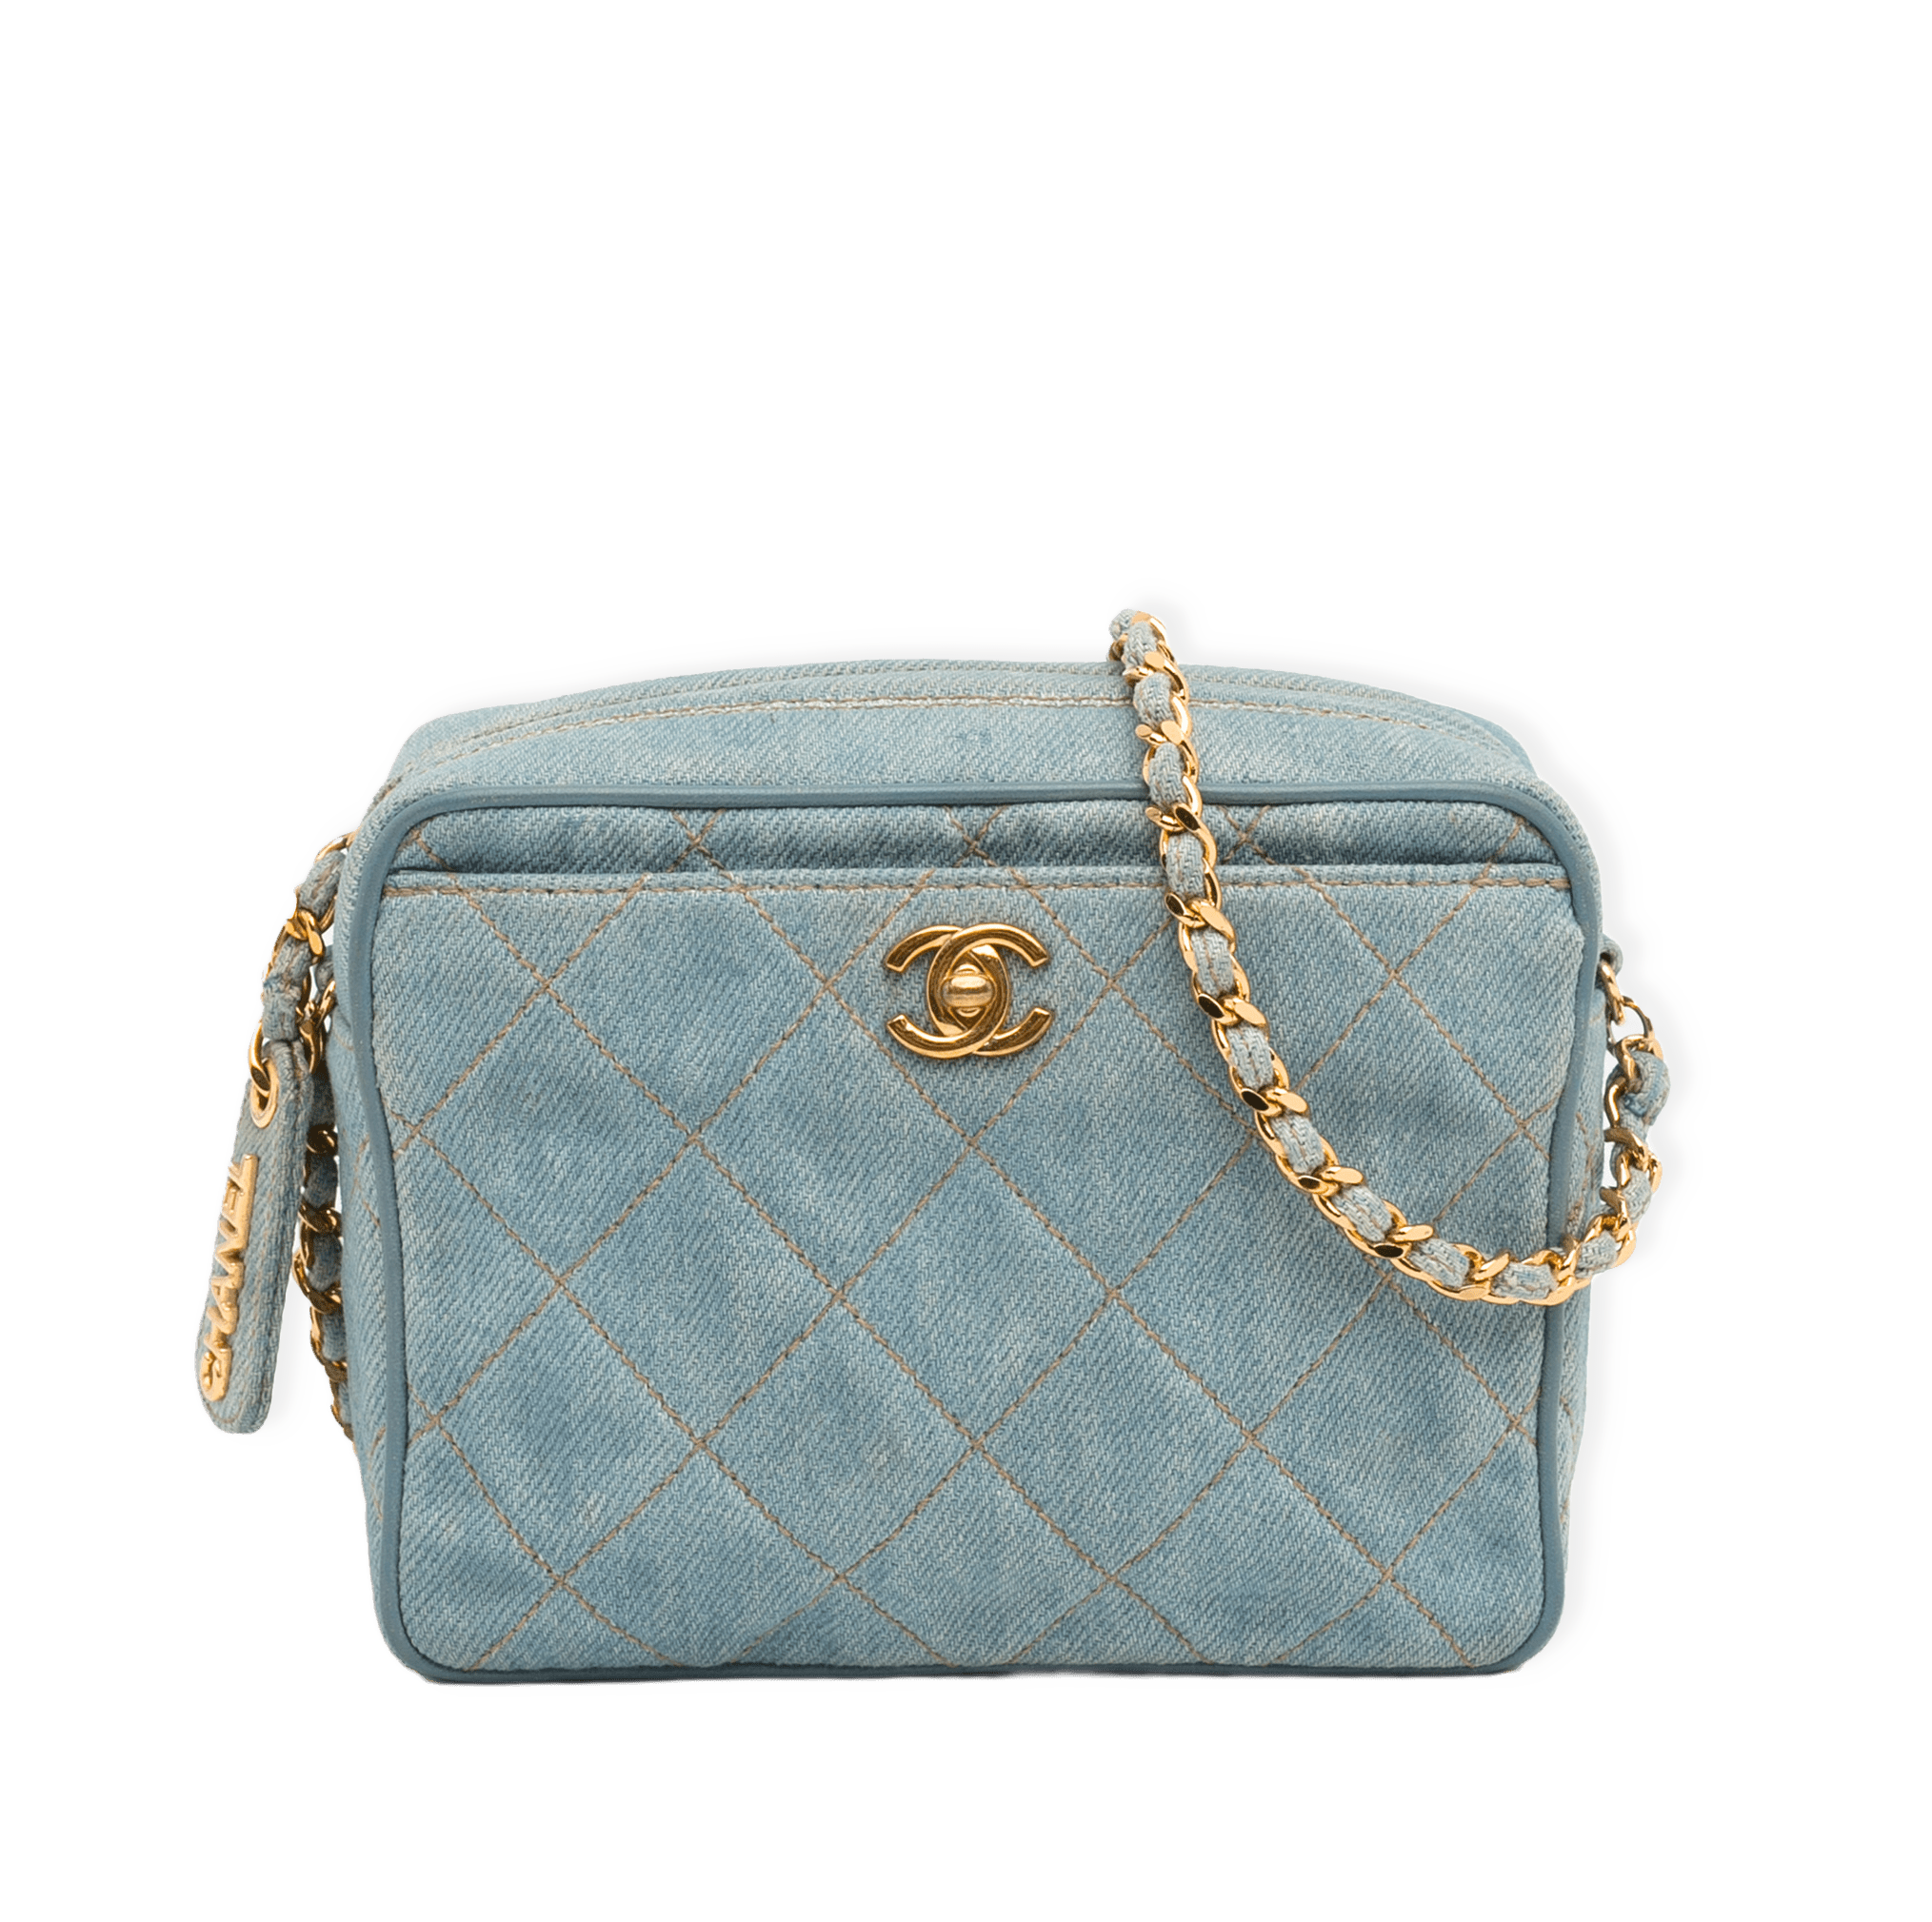 Chanel Cc Denim Crossbody Bag från Luxclusif